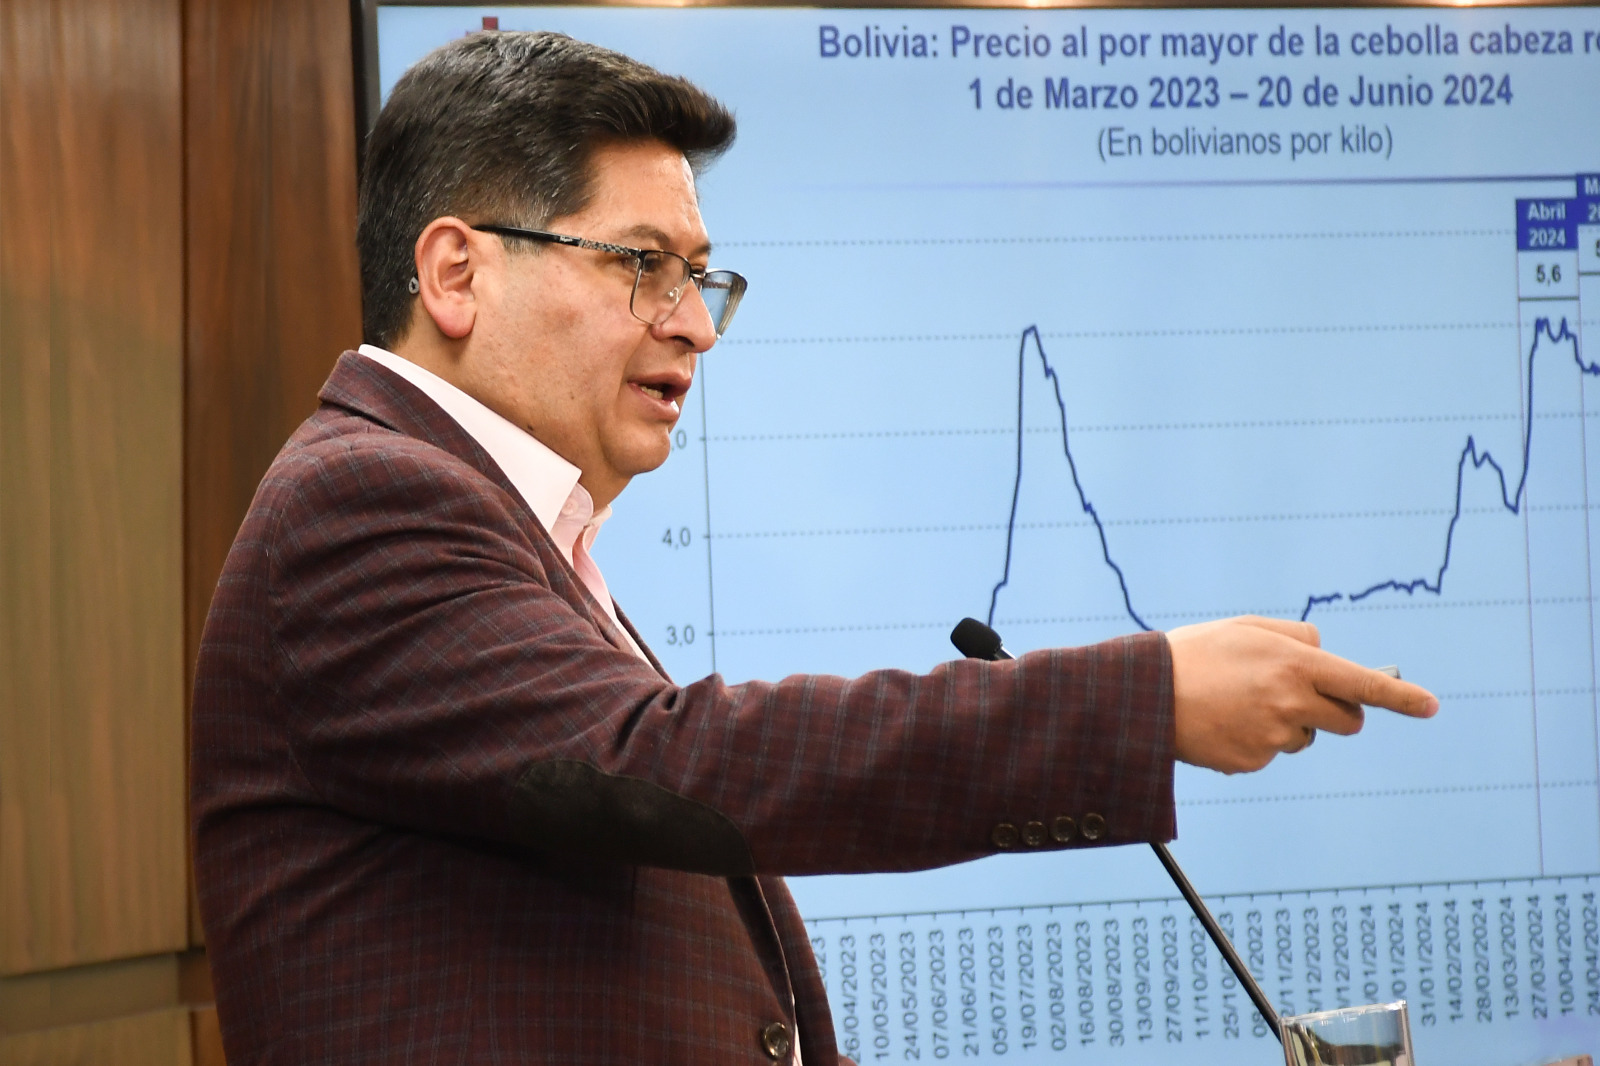 El Ministro de Economía descarta escenario de hiperinflación en Bolivia   